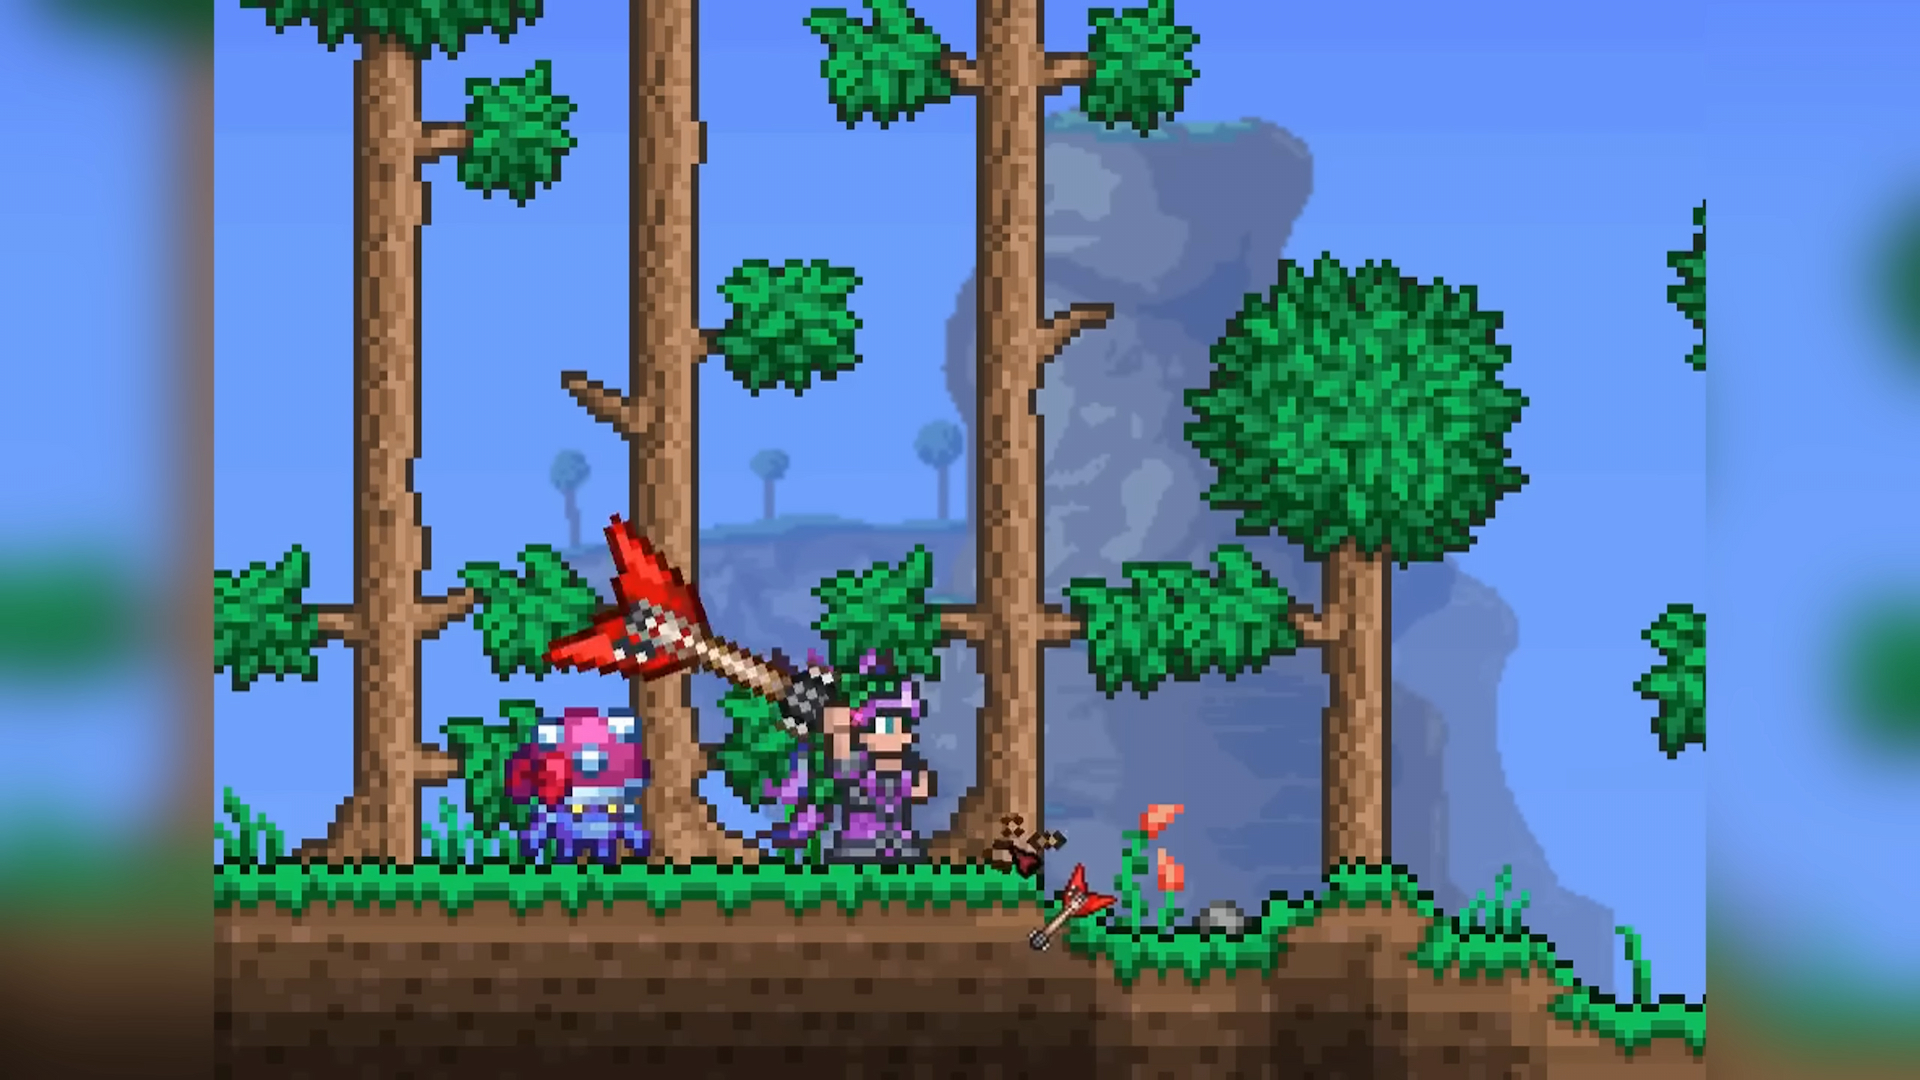 Cenx‘ grünhaariger Terraria-Charakter fällt mit einer Axt einen Baum und hat dabei einen Mushroom Boi!  Haustier aus Dead Cells raus